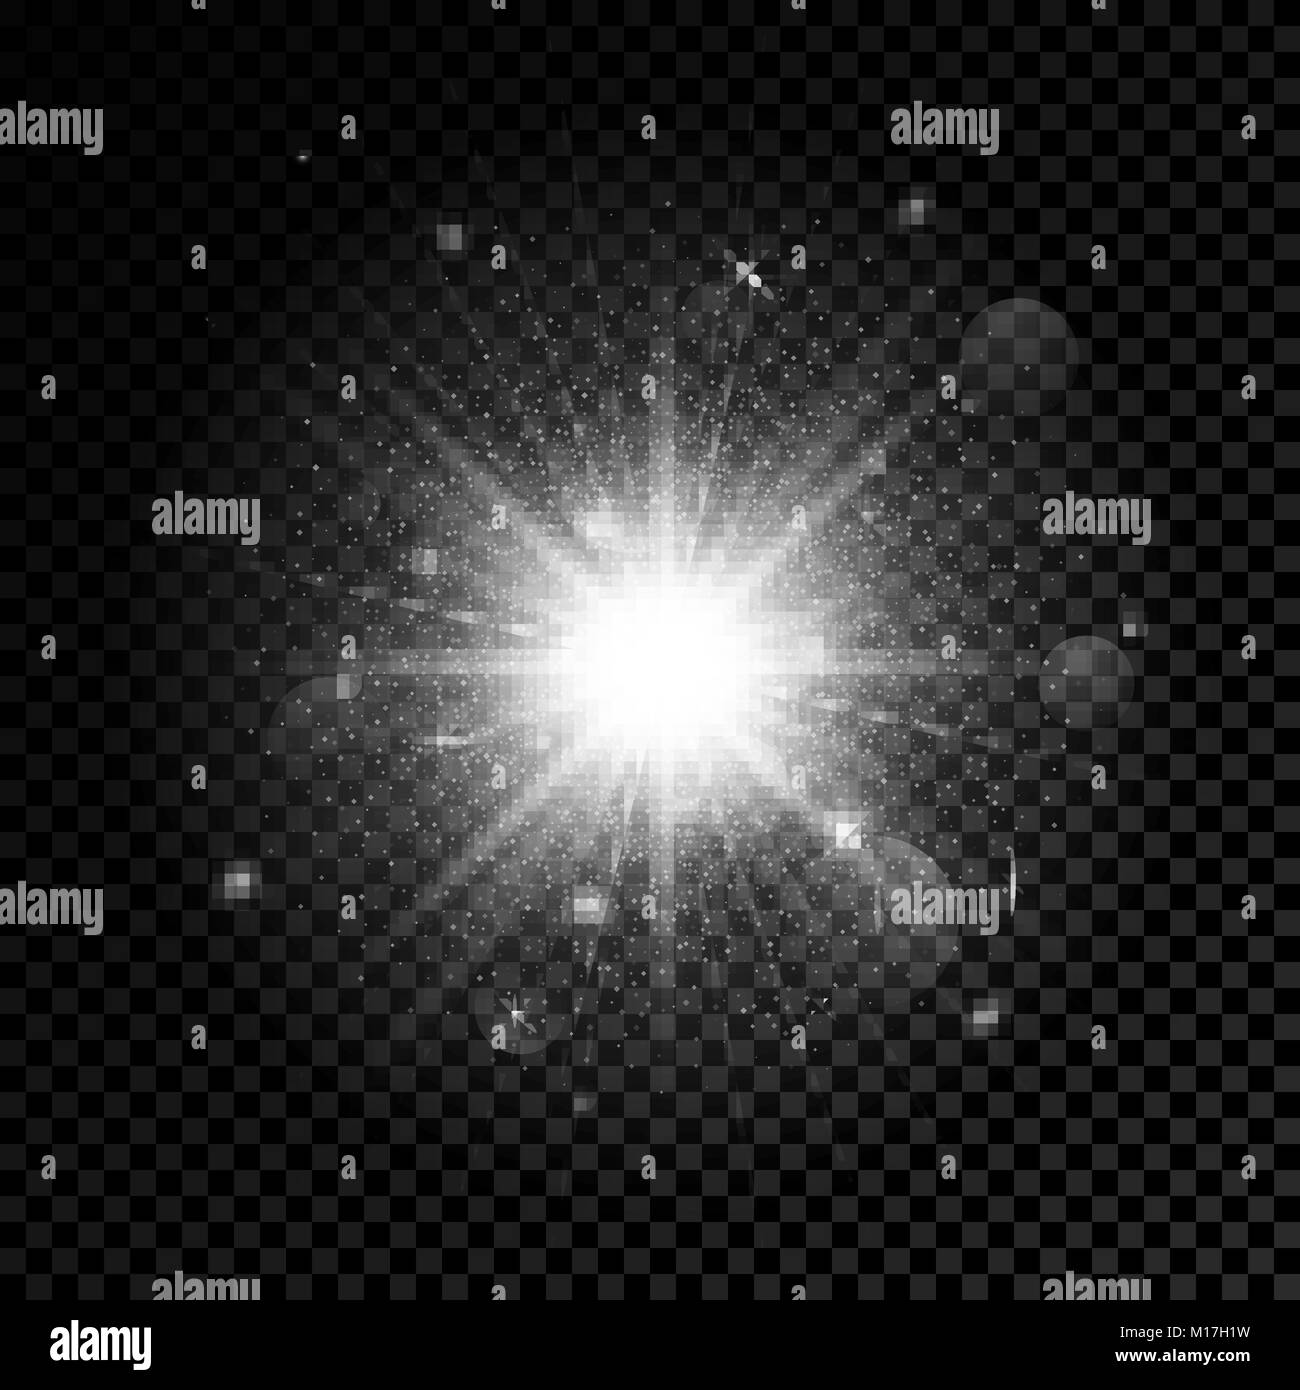 Candela di effetto di luce. Star burst con bagliori. Illustrazione di vettore isolato su sfondo trasparente Illustrazione Vettoriale